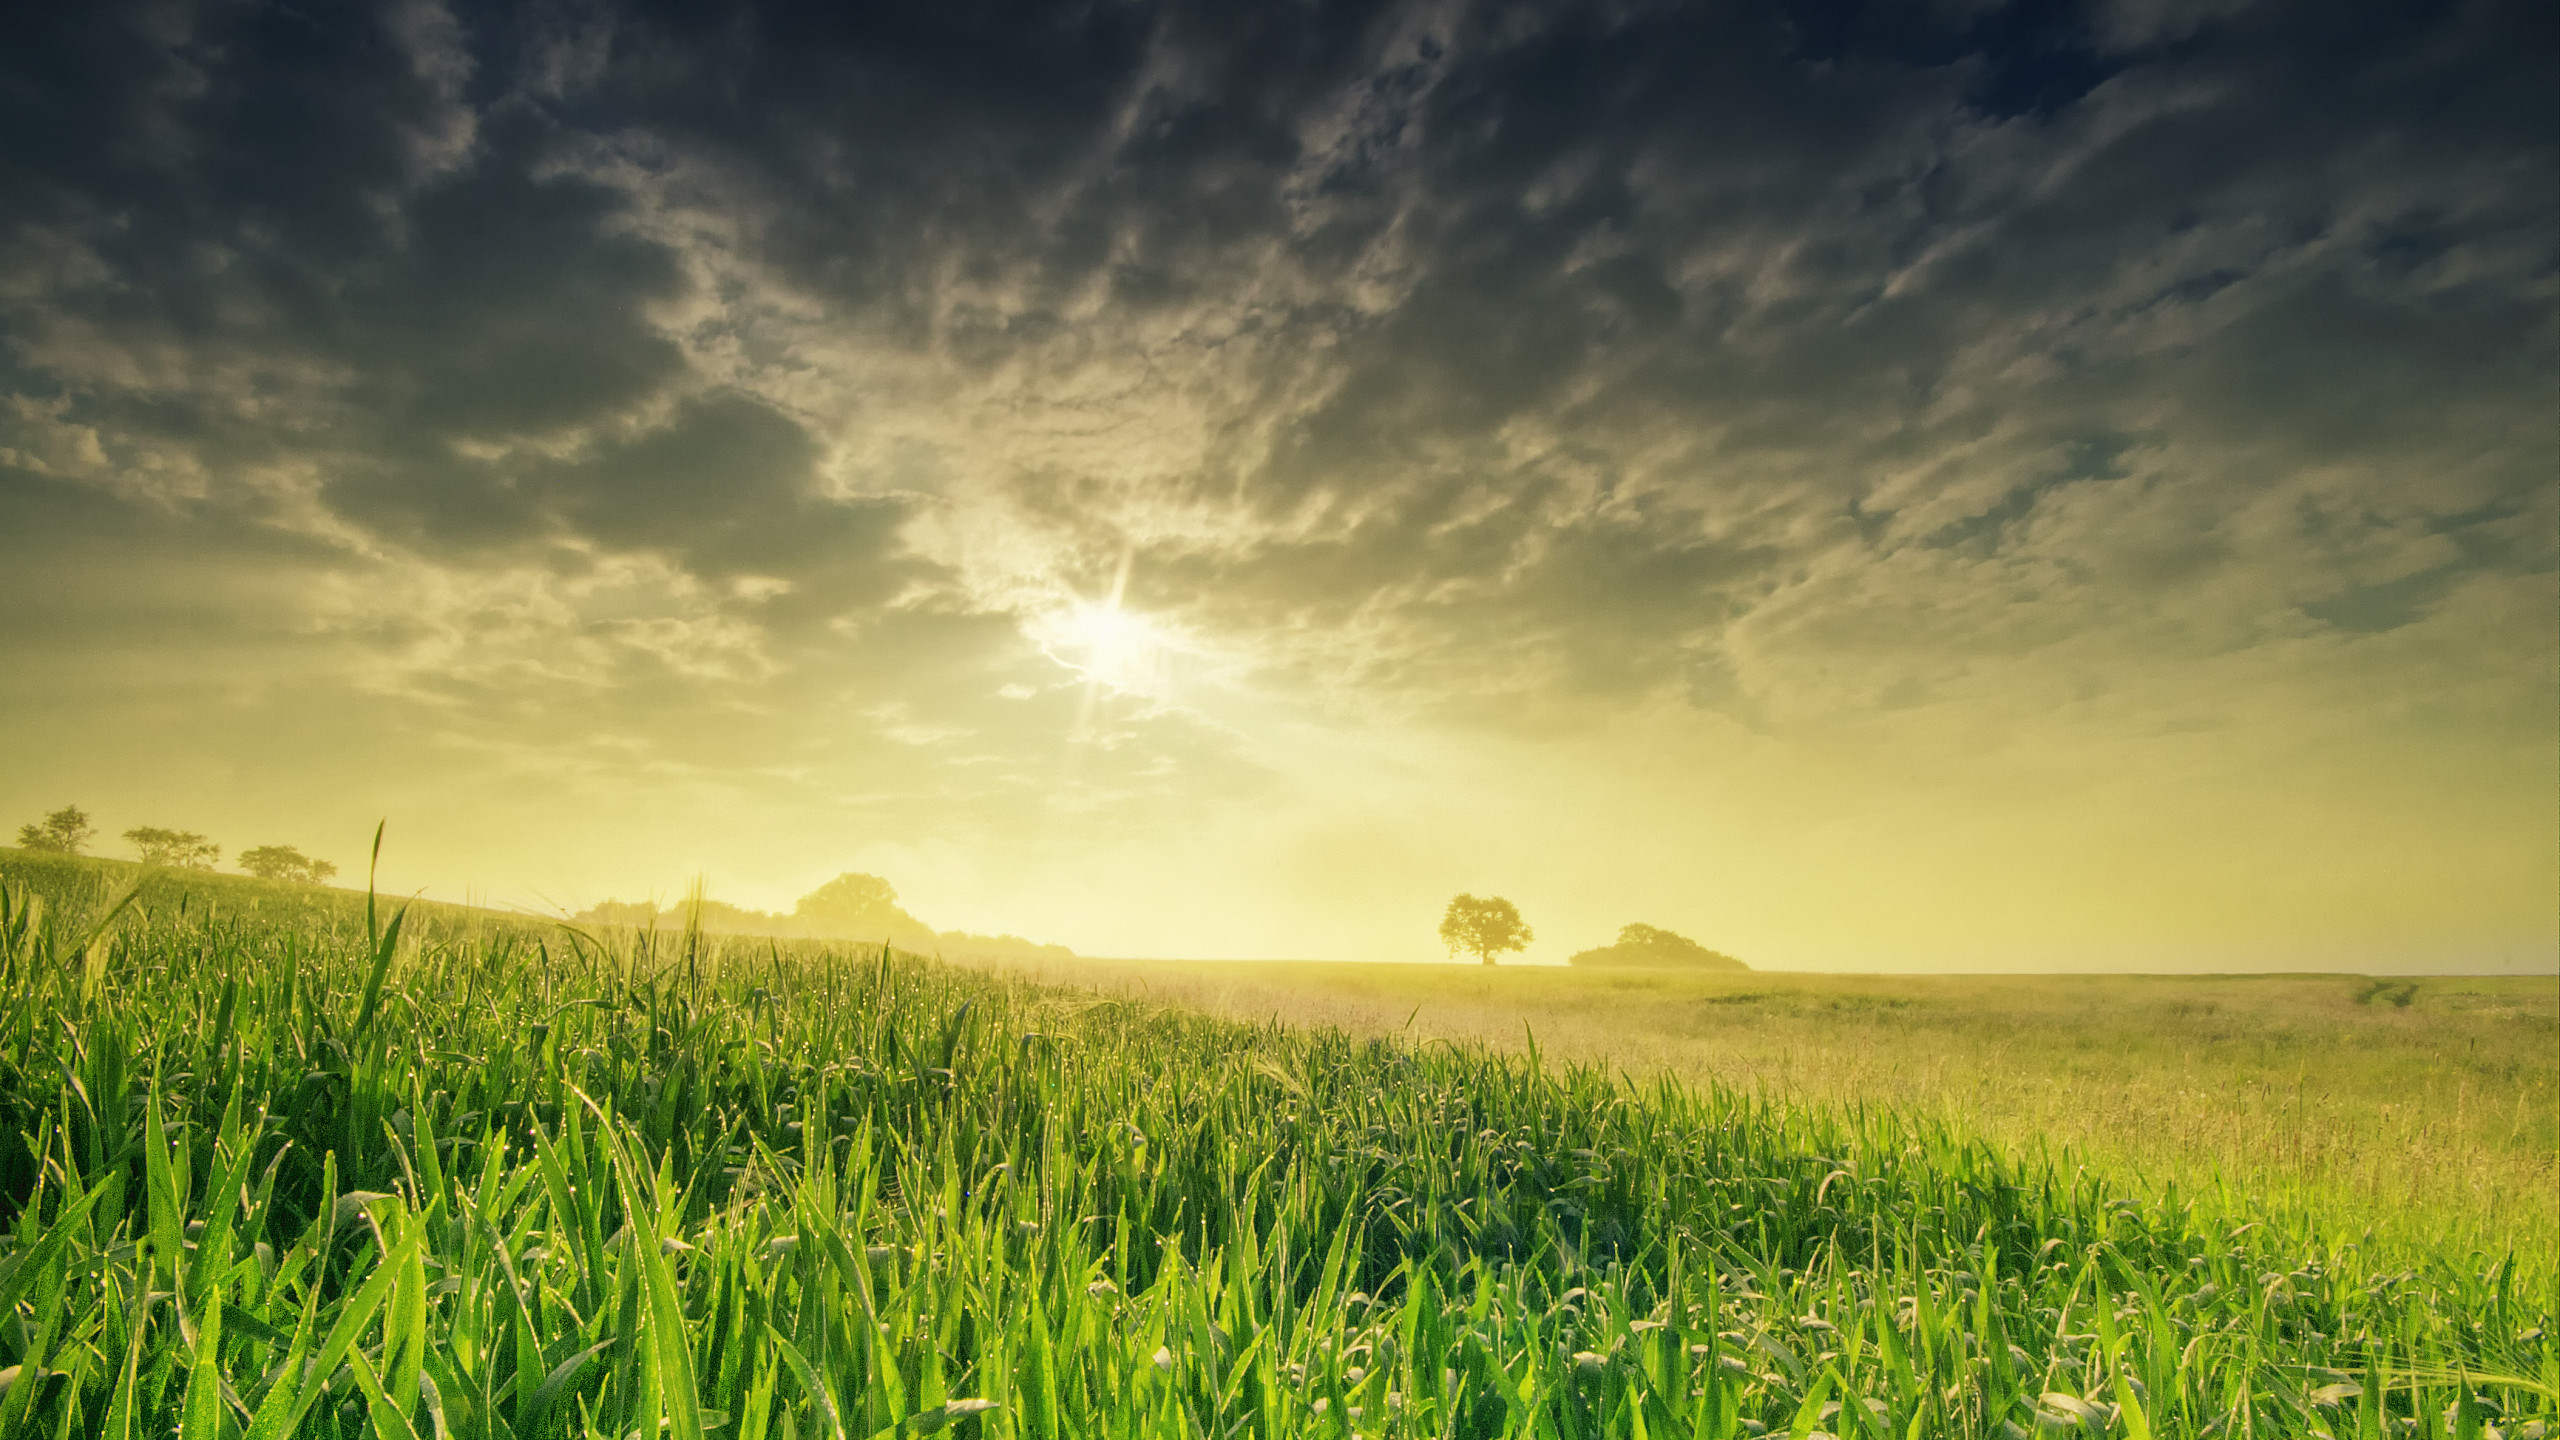 Hình nền với cánh đồng lúa và bầu trời xanh sẽ giúp cho bạn cảm thấy như mình đang sống trong thiên nhiên. Hãy xem hình liên quan để trải nghiệm.